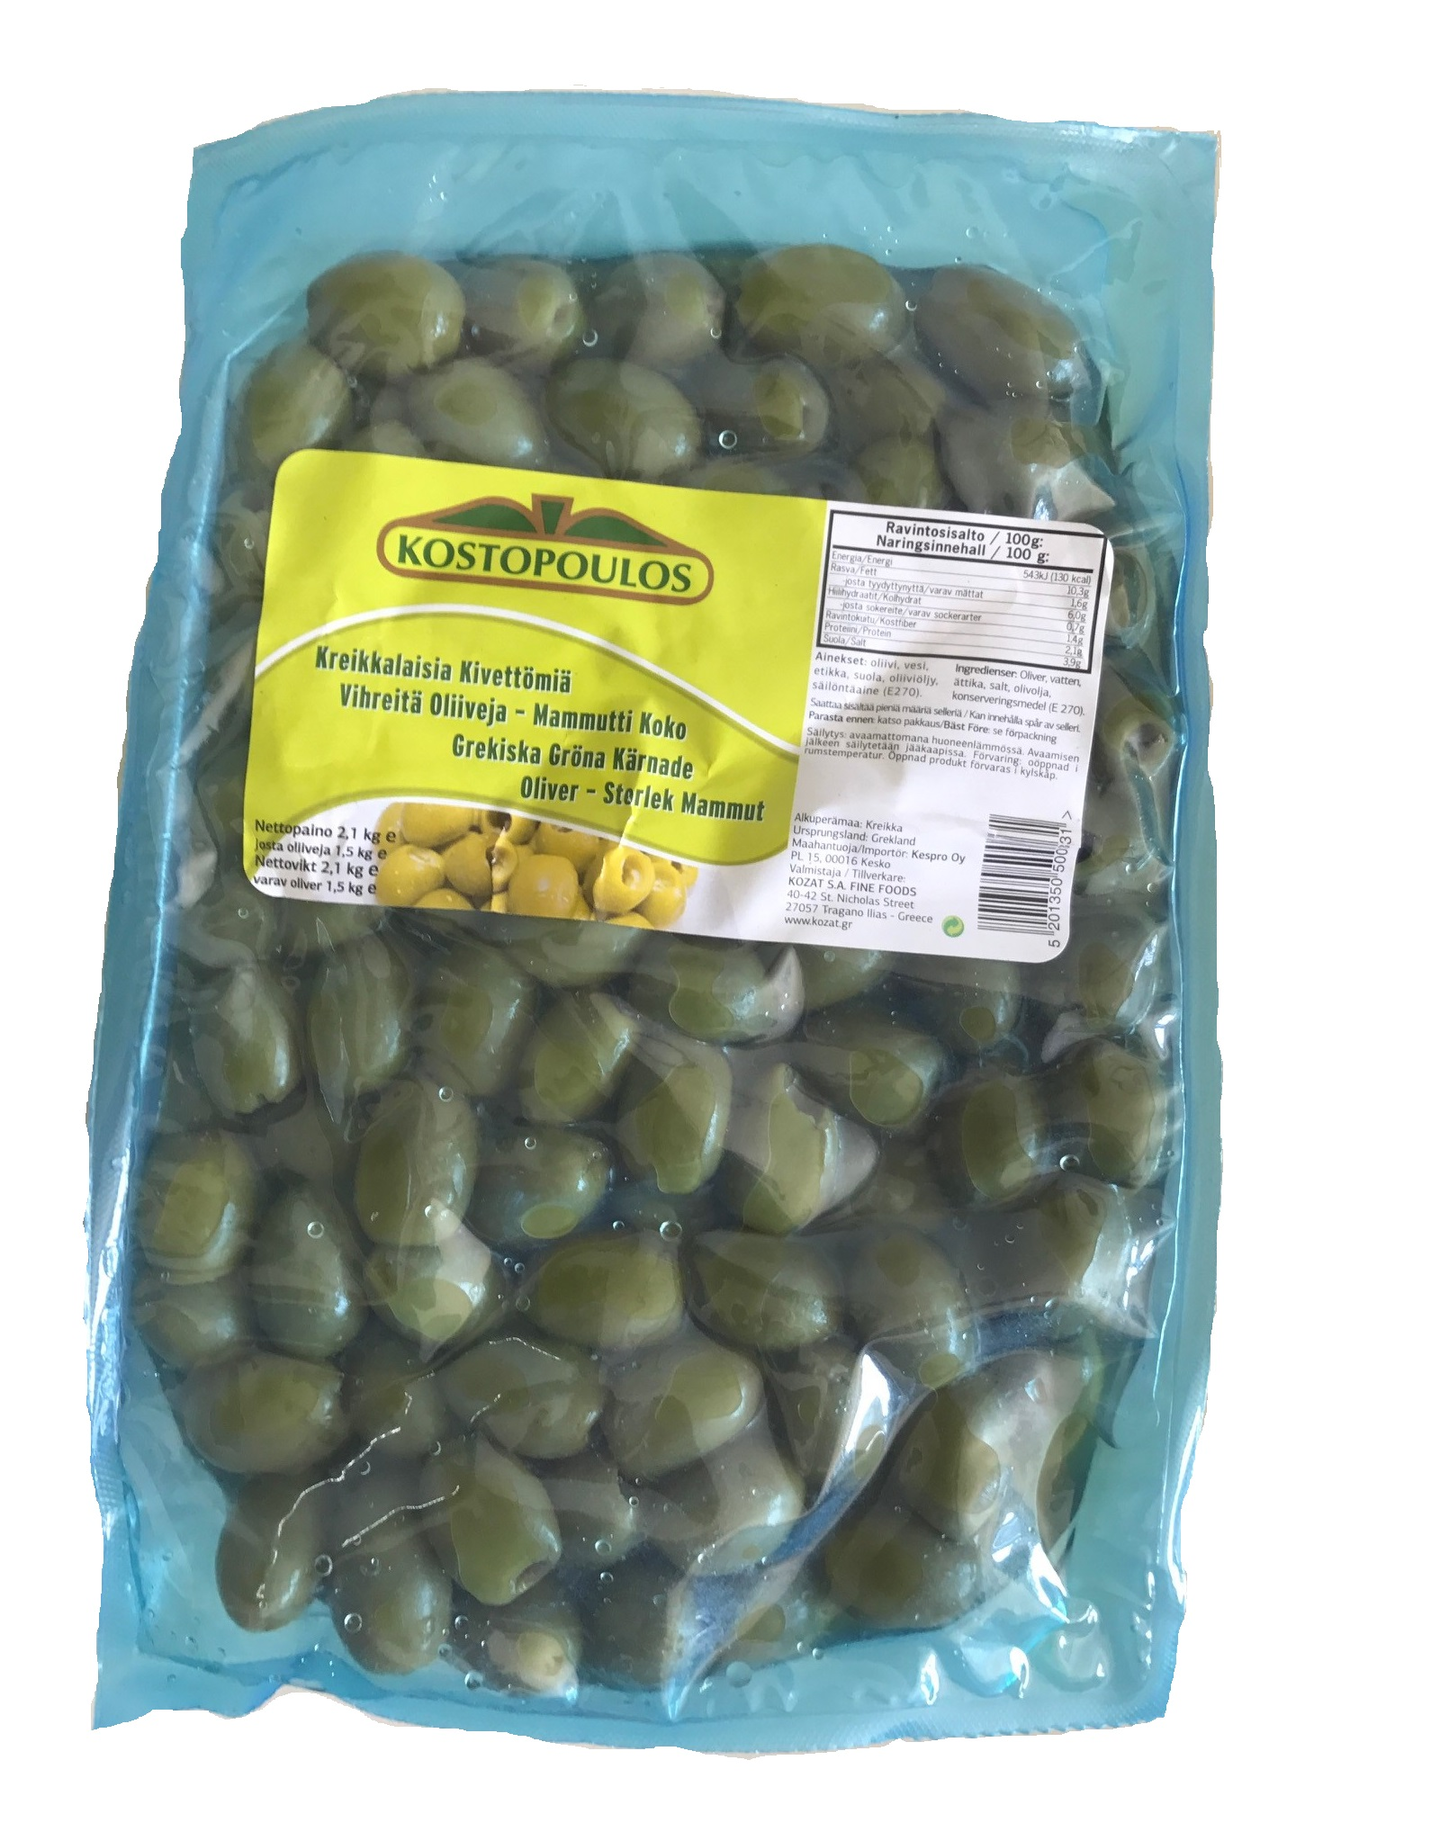 Kostopoulos kreikkalaisia kivettömiä vihreitä oliiveja mammuttikoko 2,1kg/1,5kg pussi